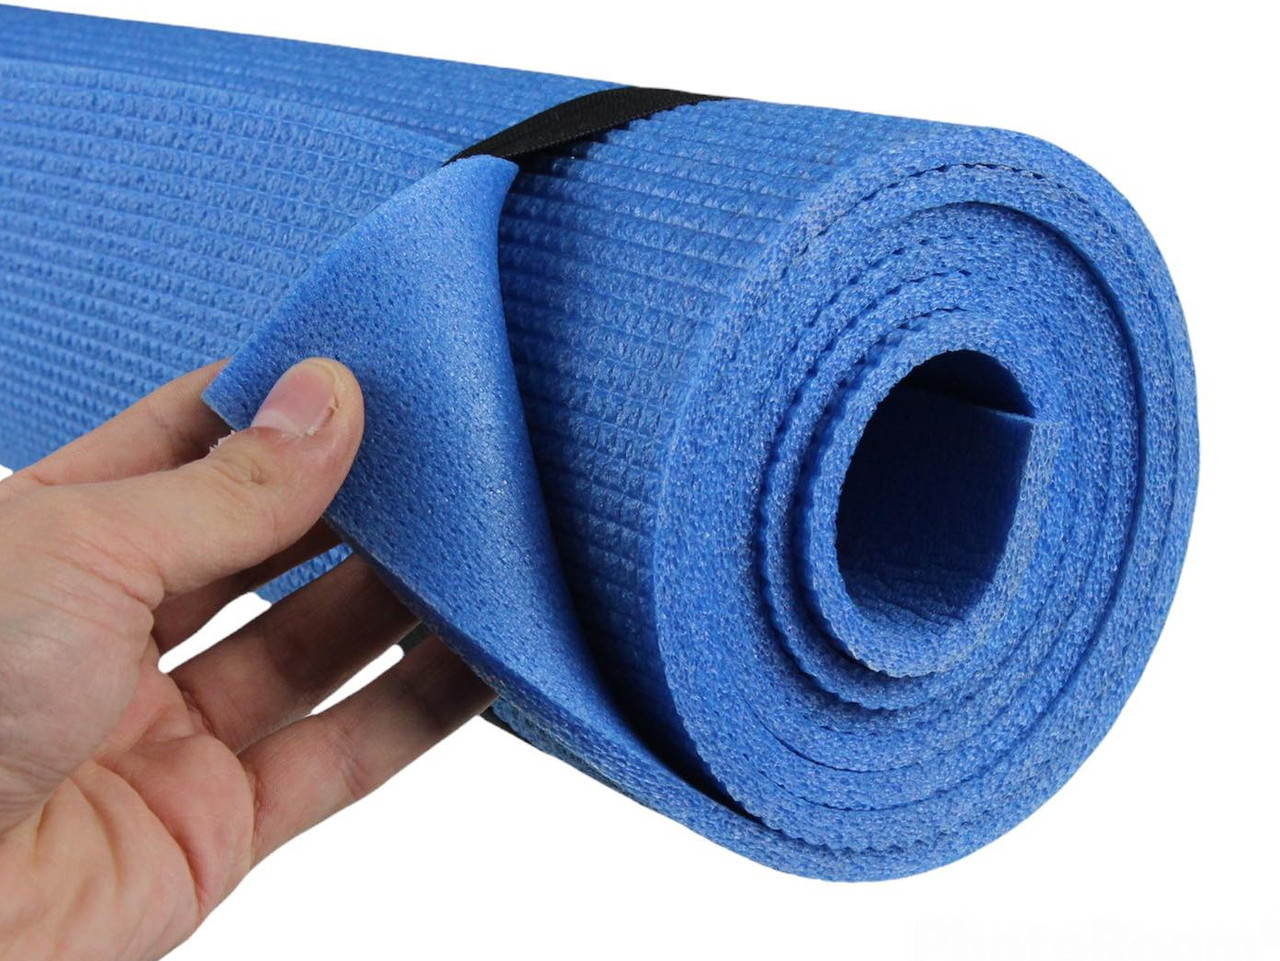 Коврик для фитнеса и йоги AEROBICA 5, синий, рулонный, толщина 5мм, ширина 120см детальная фотка